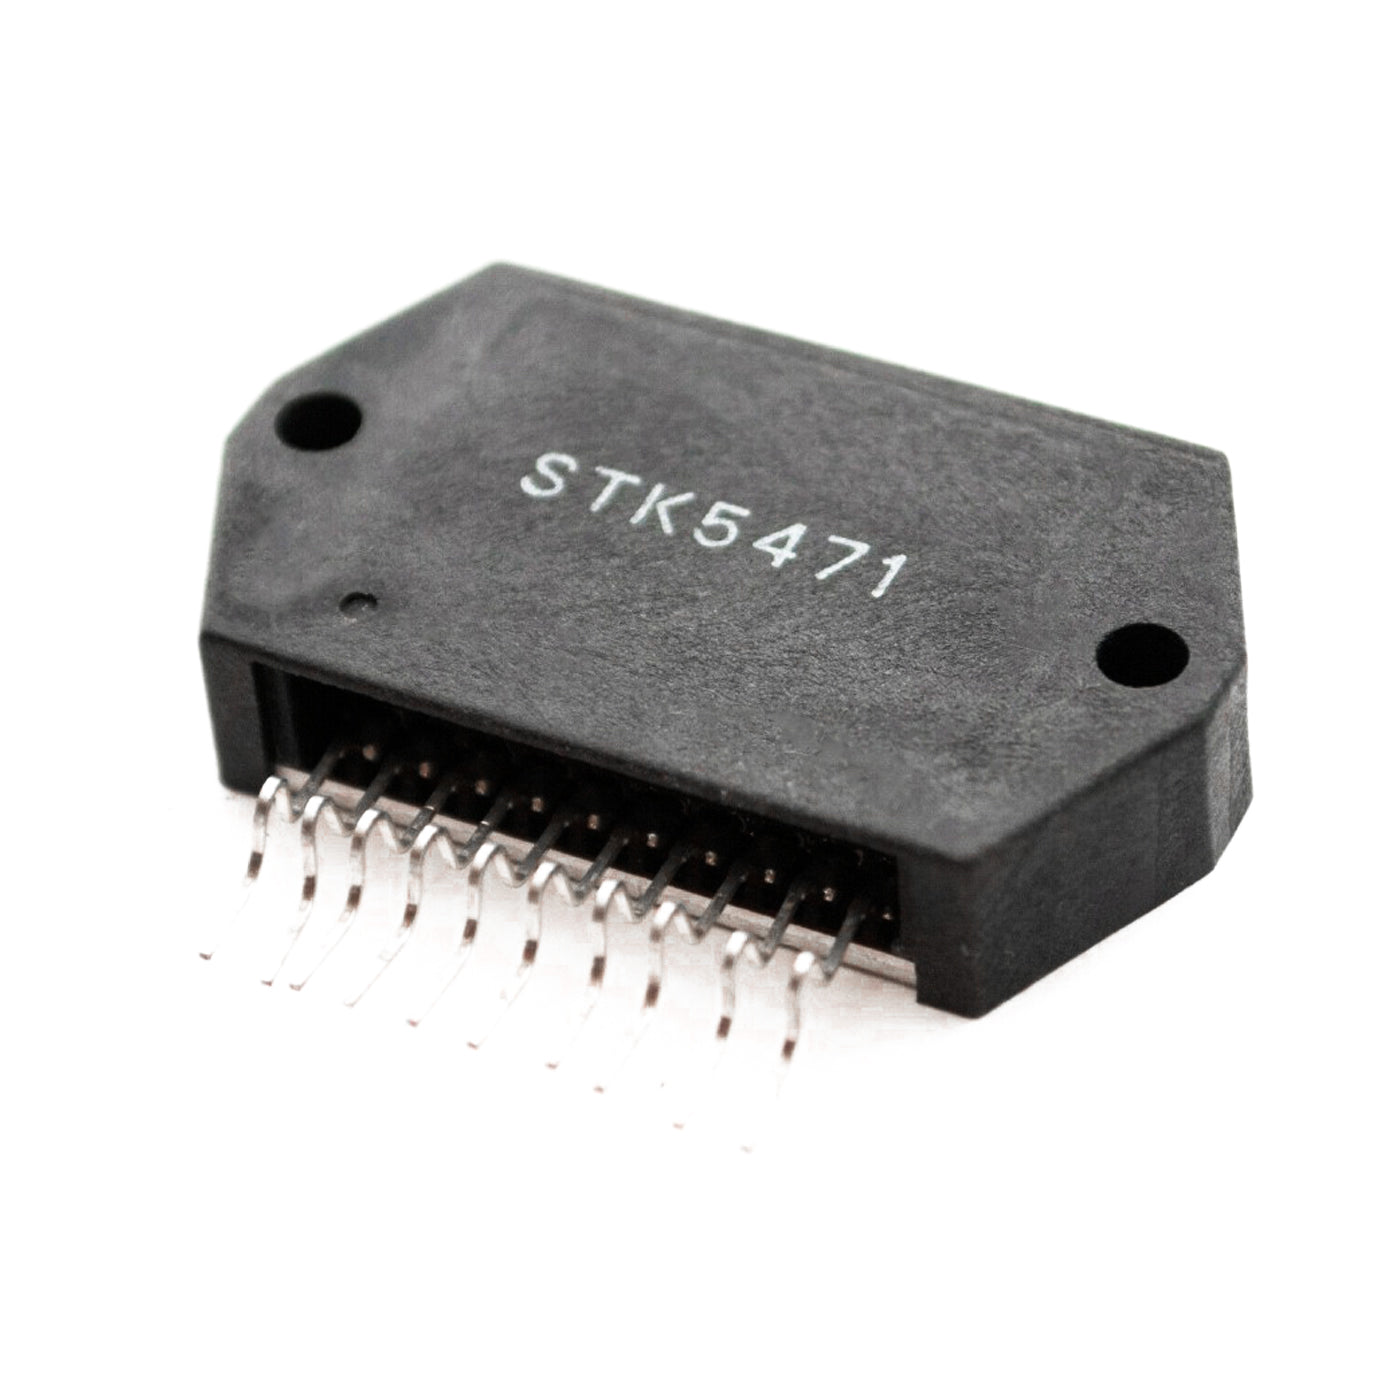 STK5471 componente elettronico, circuito integrato, 10 contatti